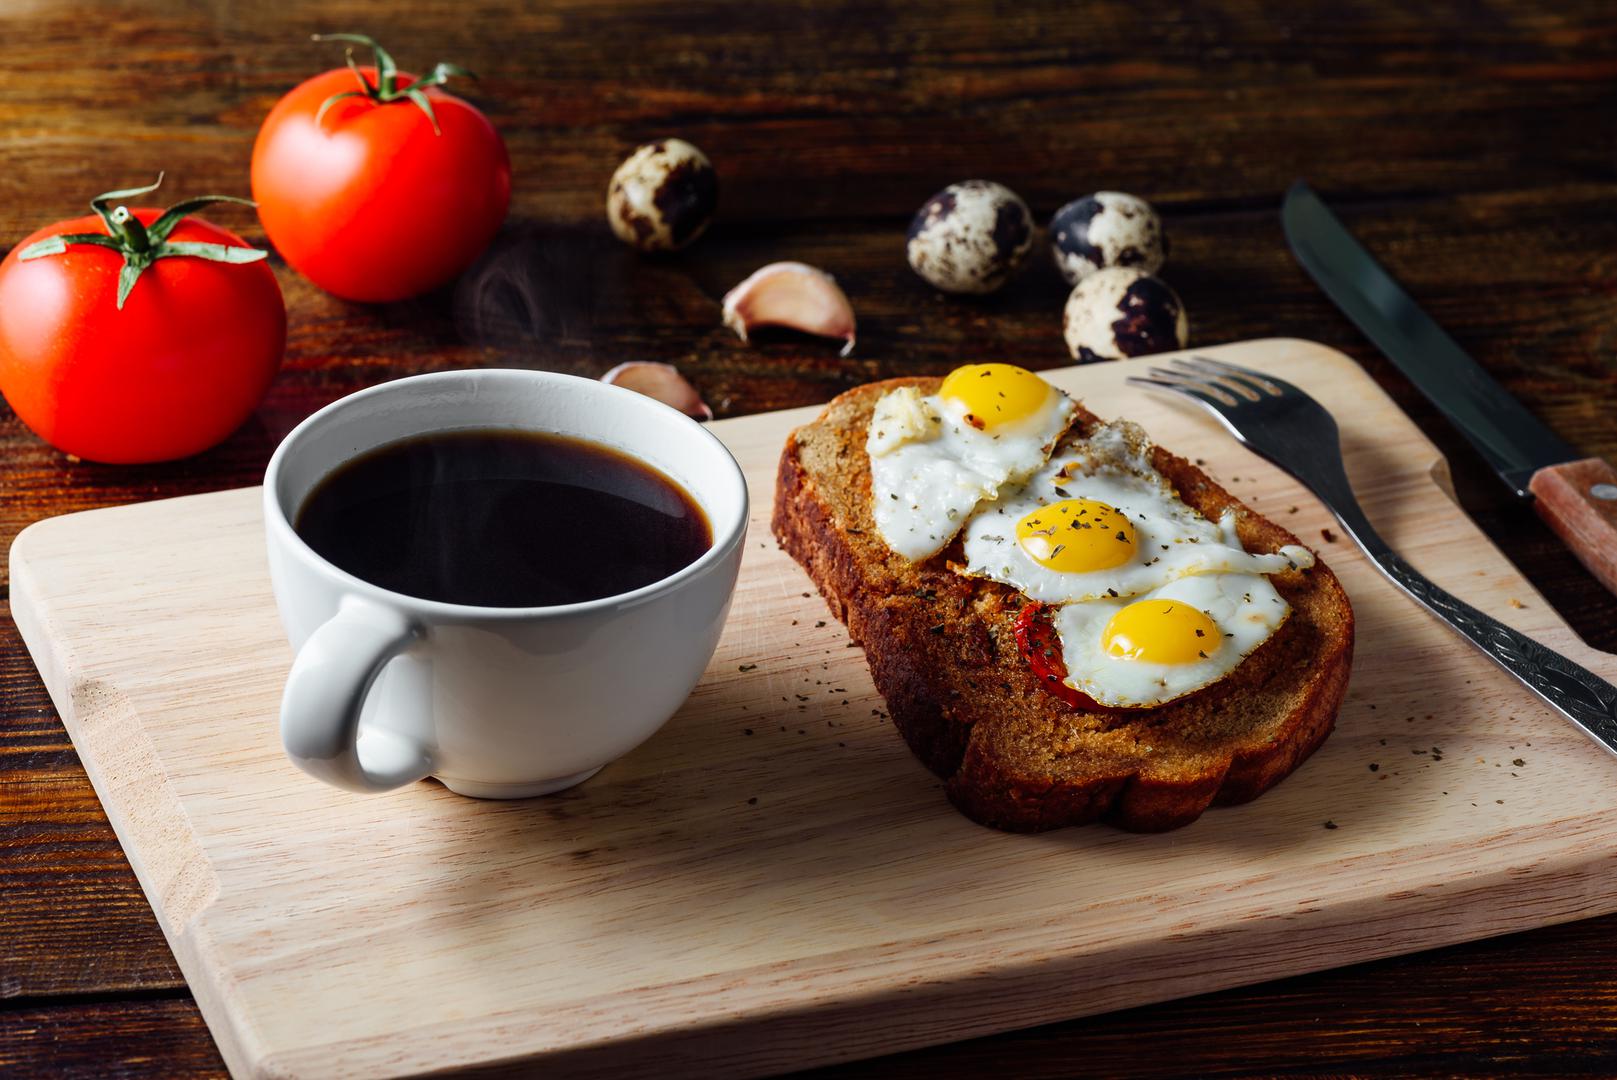 Za doručak jaja i kava – Nutricionistica Lyndi Cohen kaže kako je kombinacija jaje i kave za doručak idealna za gubitak kilograma, a osim toga, kofein pomaže pri koncentraciji, ali i suzbija apetit. Jaja su izvrstan izvor proteina, najbolja hrana za početak dana.